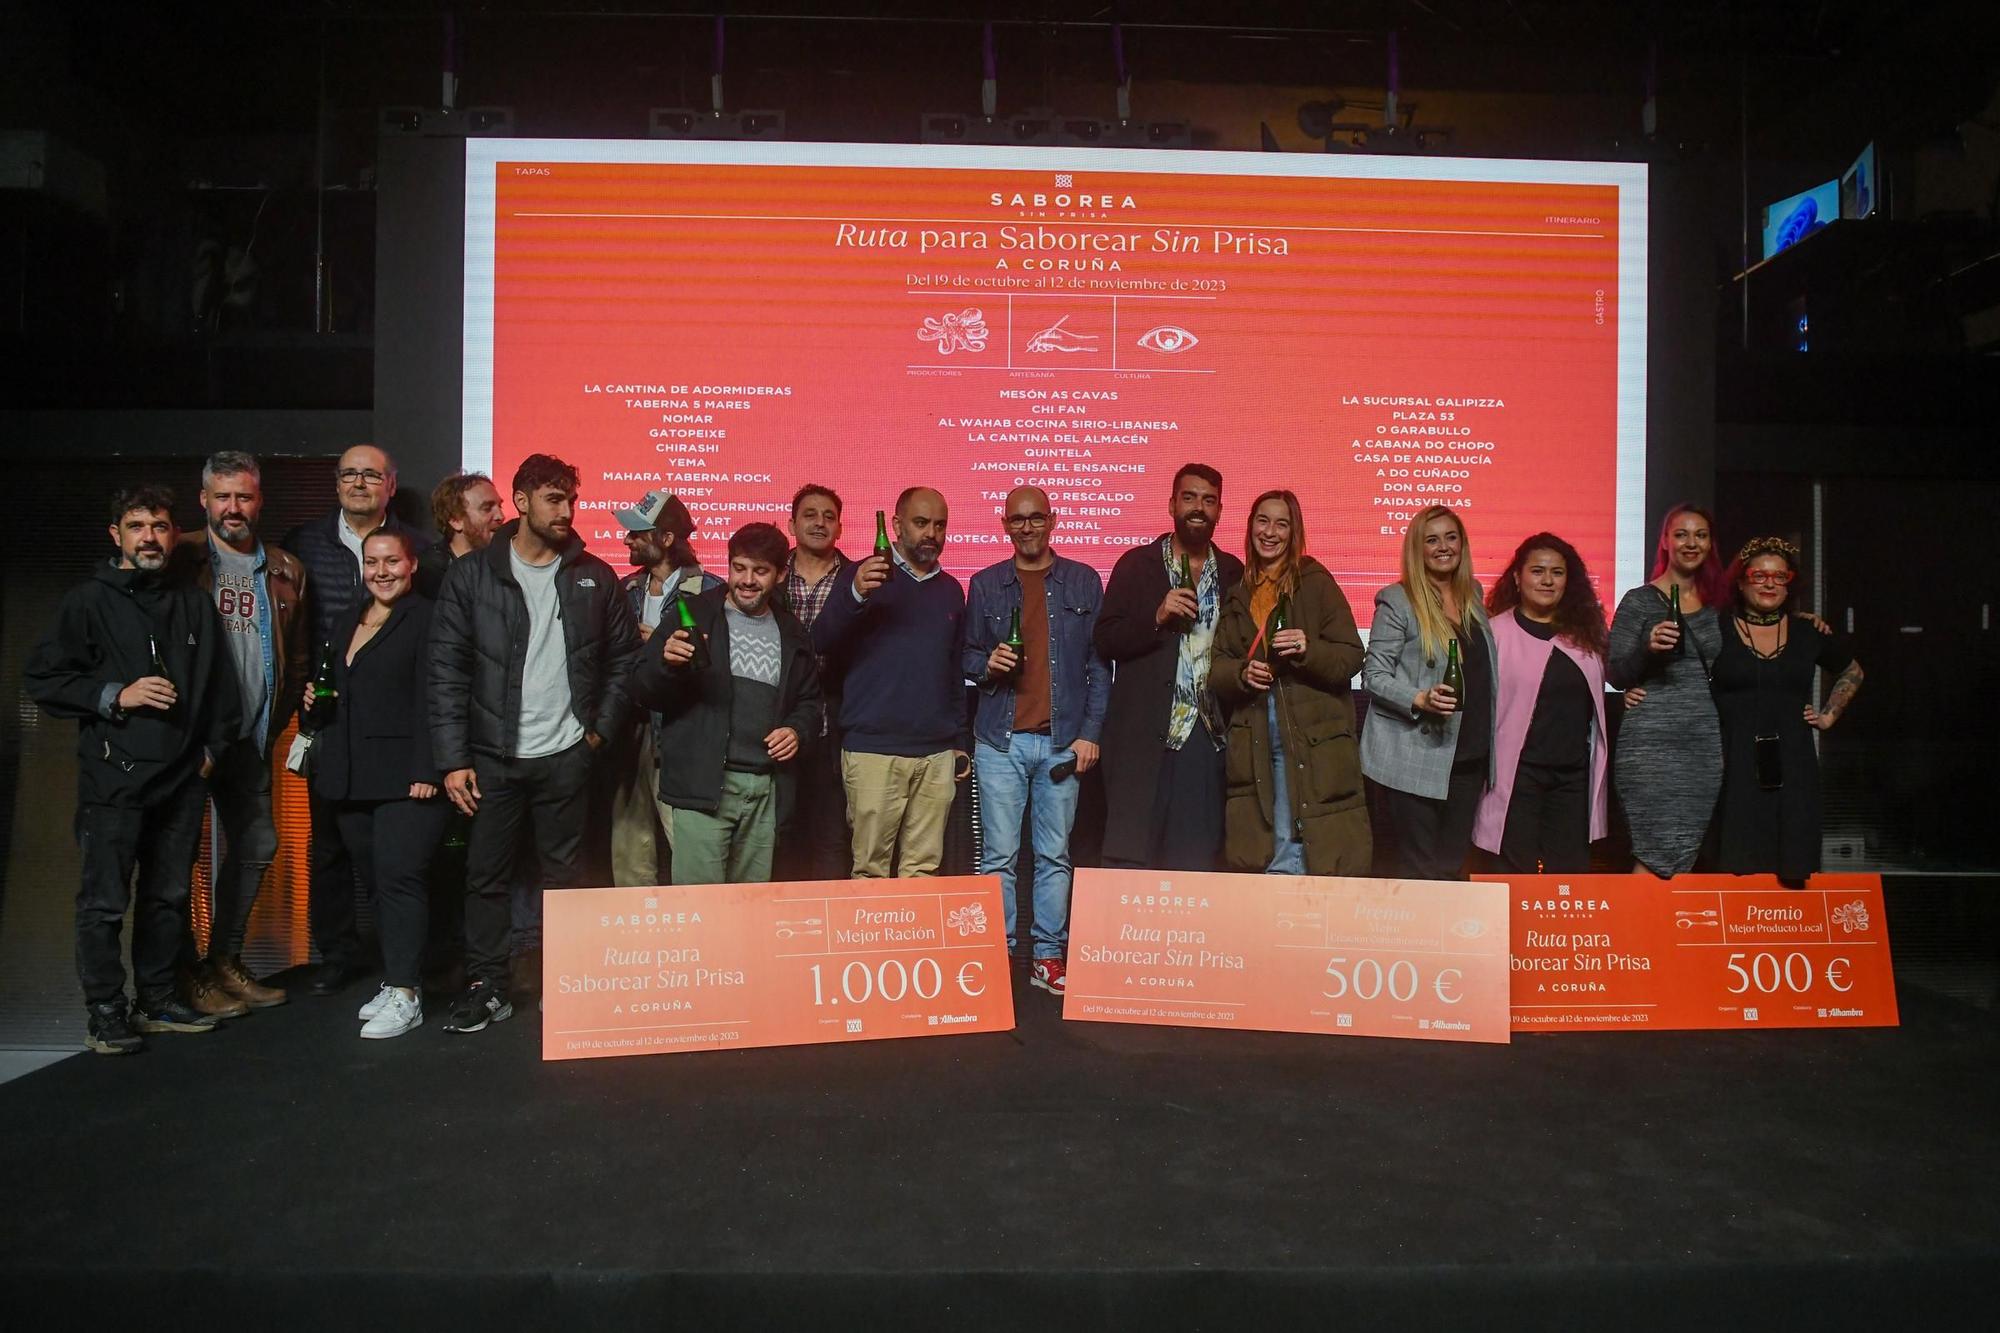 Entrega de premios de la 'Ruta para Saborear Sin Prisa A Coruña' de Cervezas Alhambra